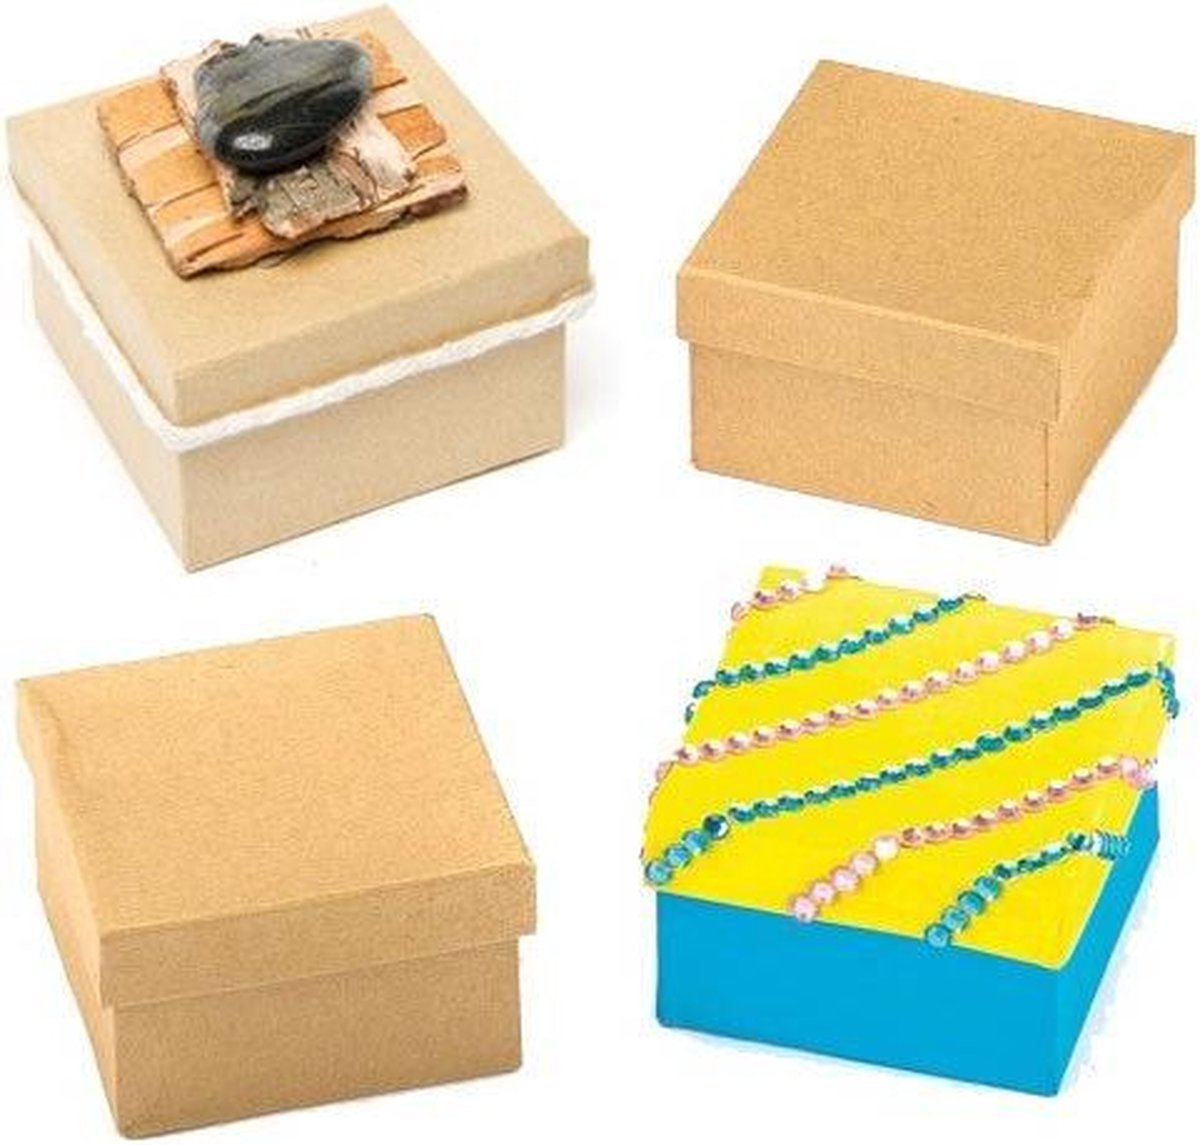 knal kan niet zien Echter Vierkante knutseldoosjes (6 stuks per verpakking) | bol.com